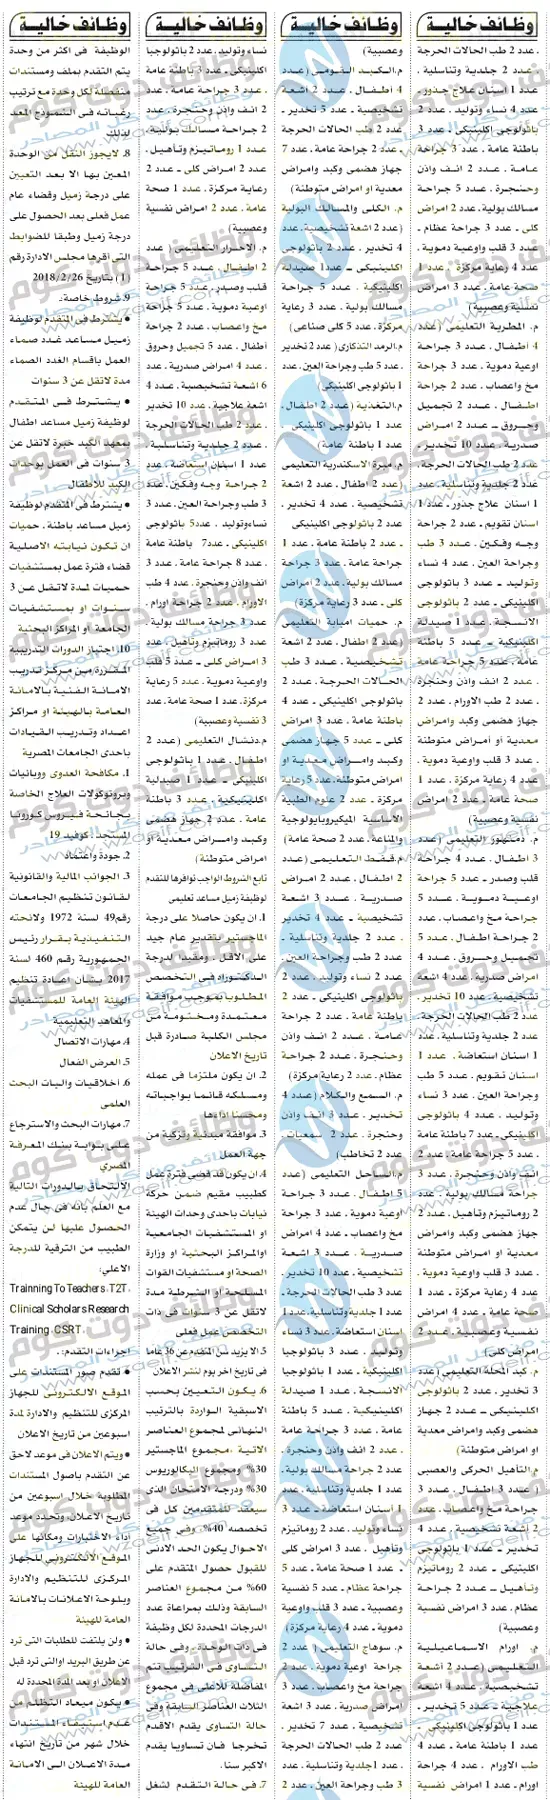 وظائف اهرام الجمعة 20-11-2020 | وظائف جريدة الاهرام الاسبوعى 20 نوفمبر 2020 وظائف دوت كوم